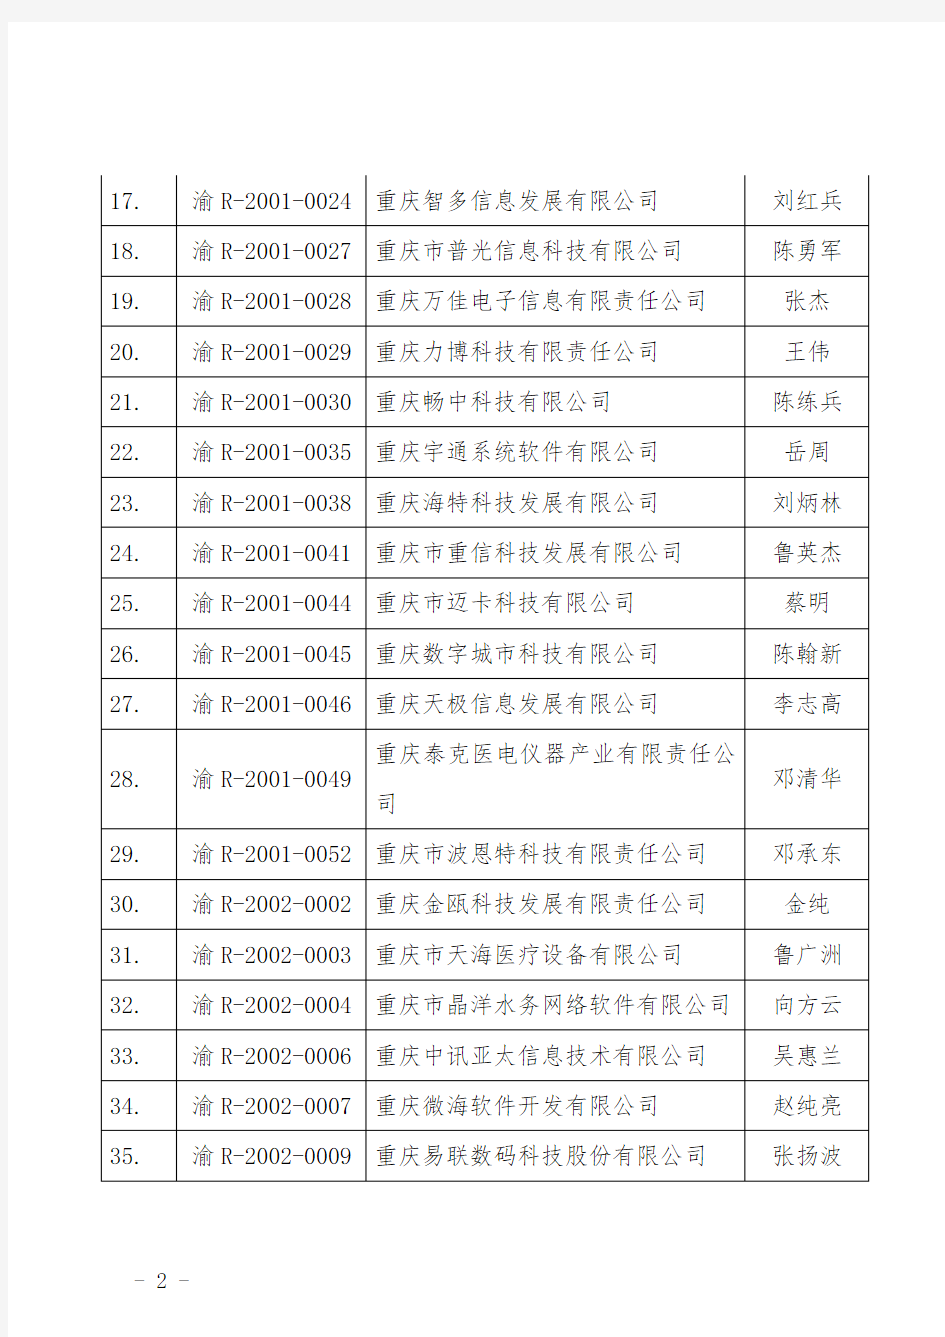 重庆最全软件企业名单2015(570家)